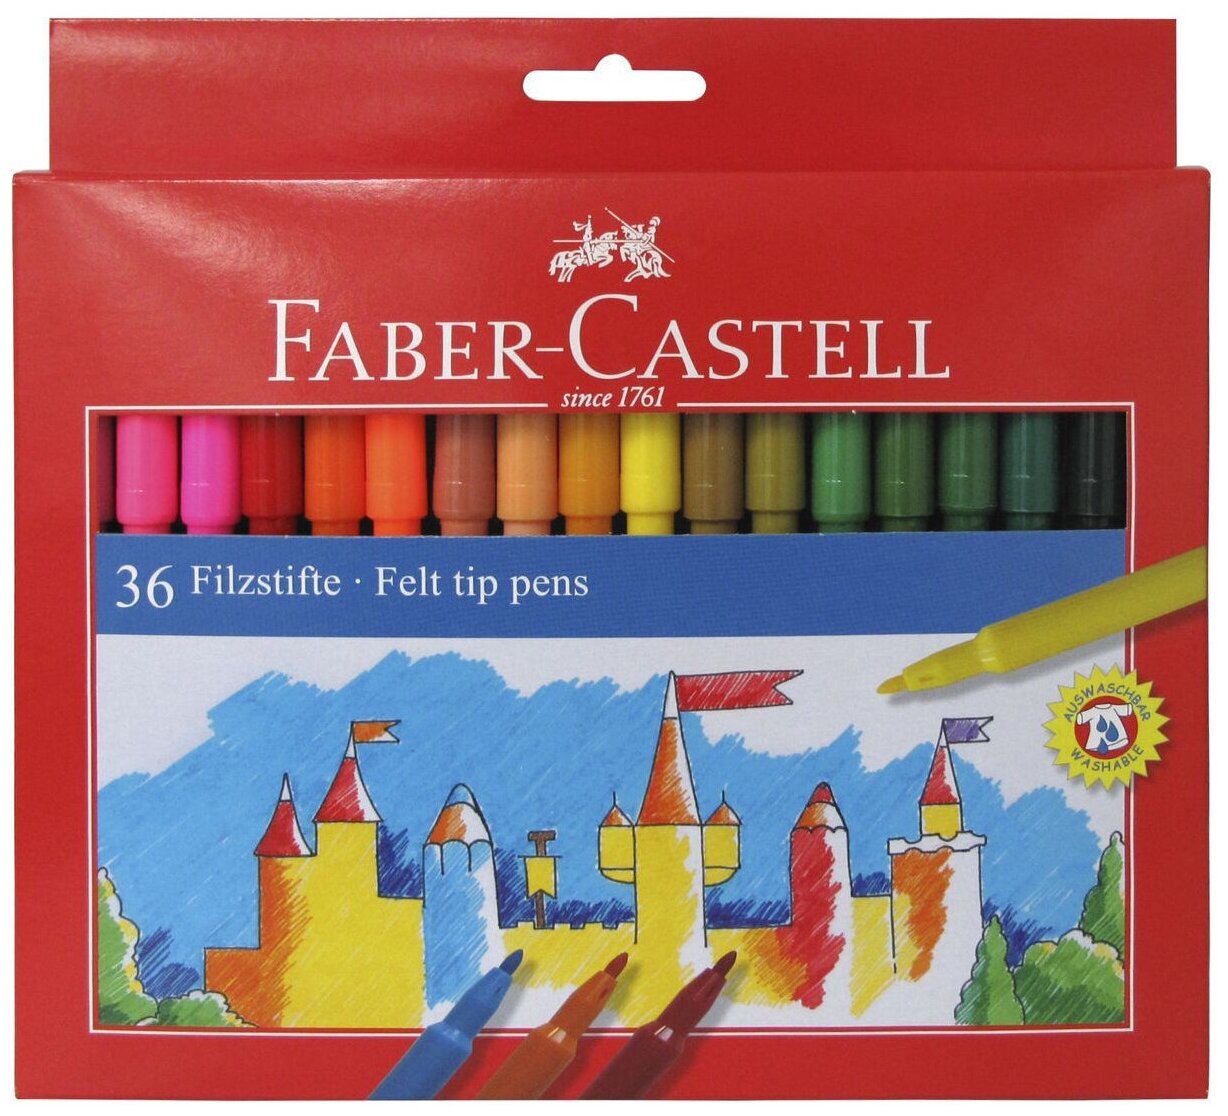 Faber-Castell Набор фломастеров Замок (554236), разноцветный, 36 шт.